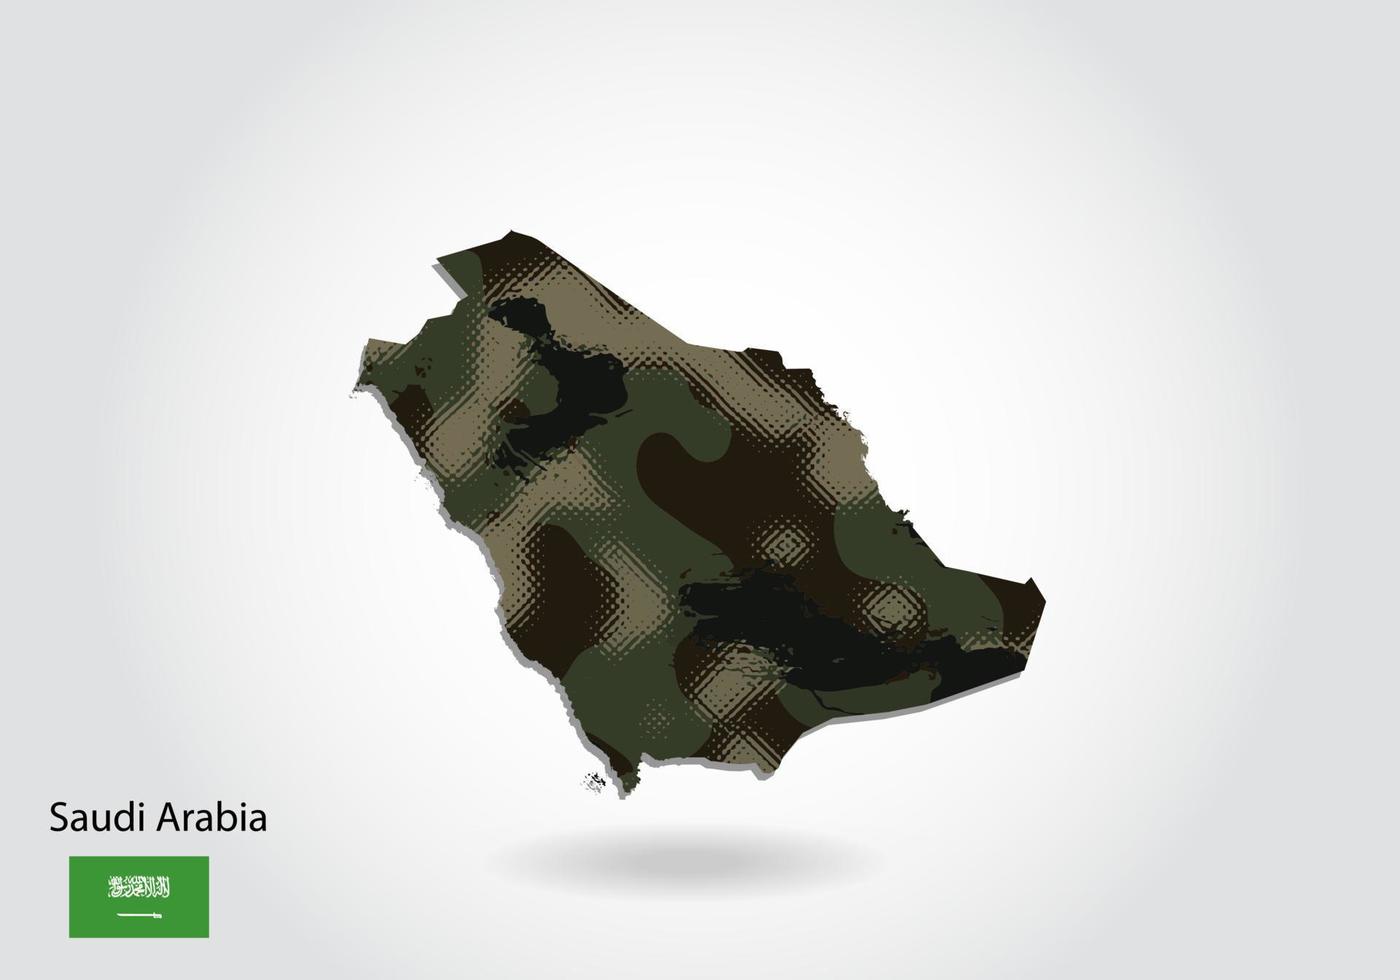 carte de l'arabie saoudite avec motif camouflage, forêt - texture verte sur la carte. concept militaire pour l'armée, le soldat et la guerre. armoiries, drapeau. vecteur